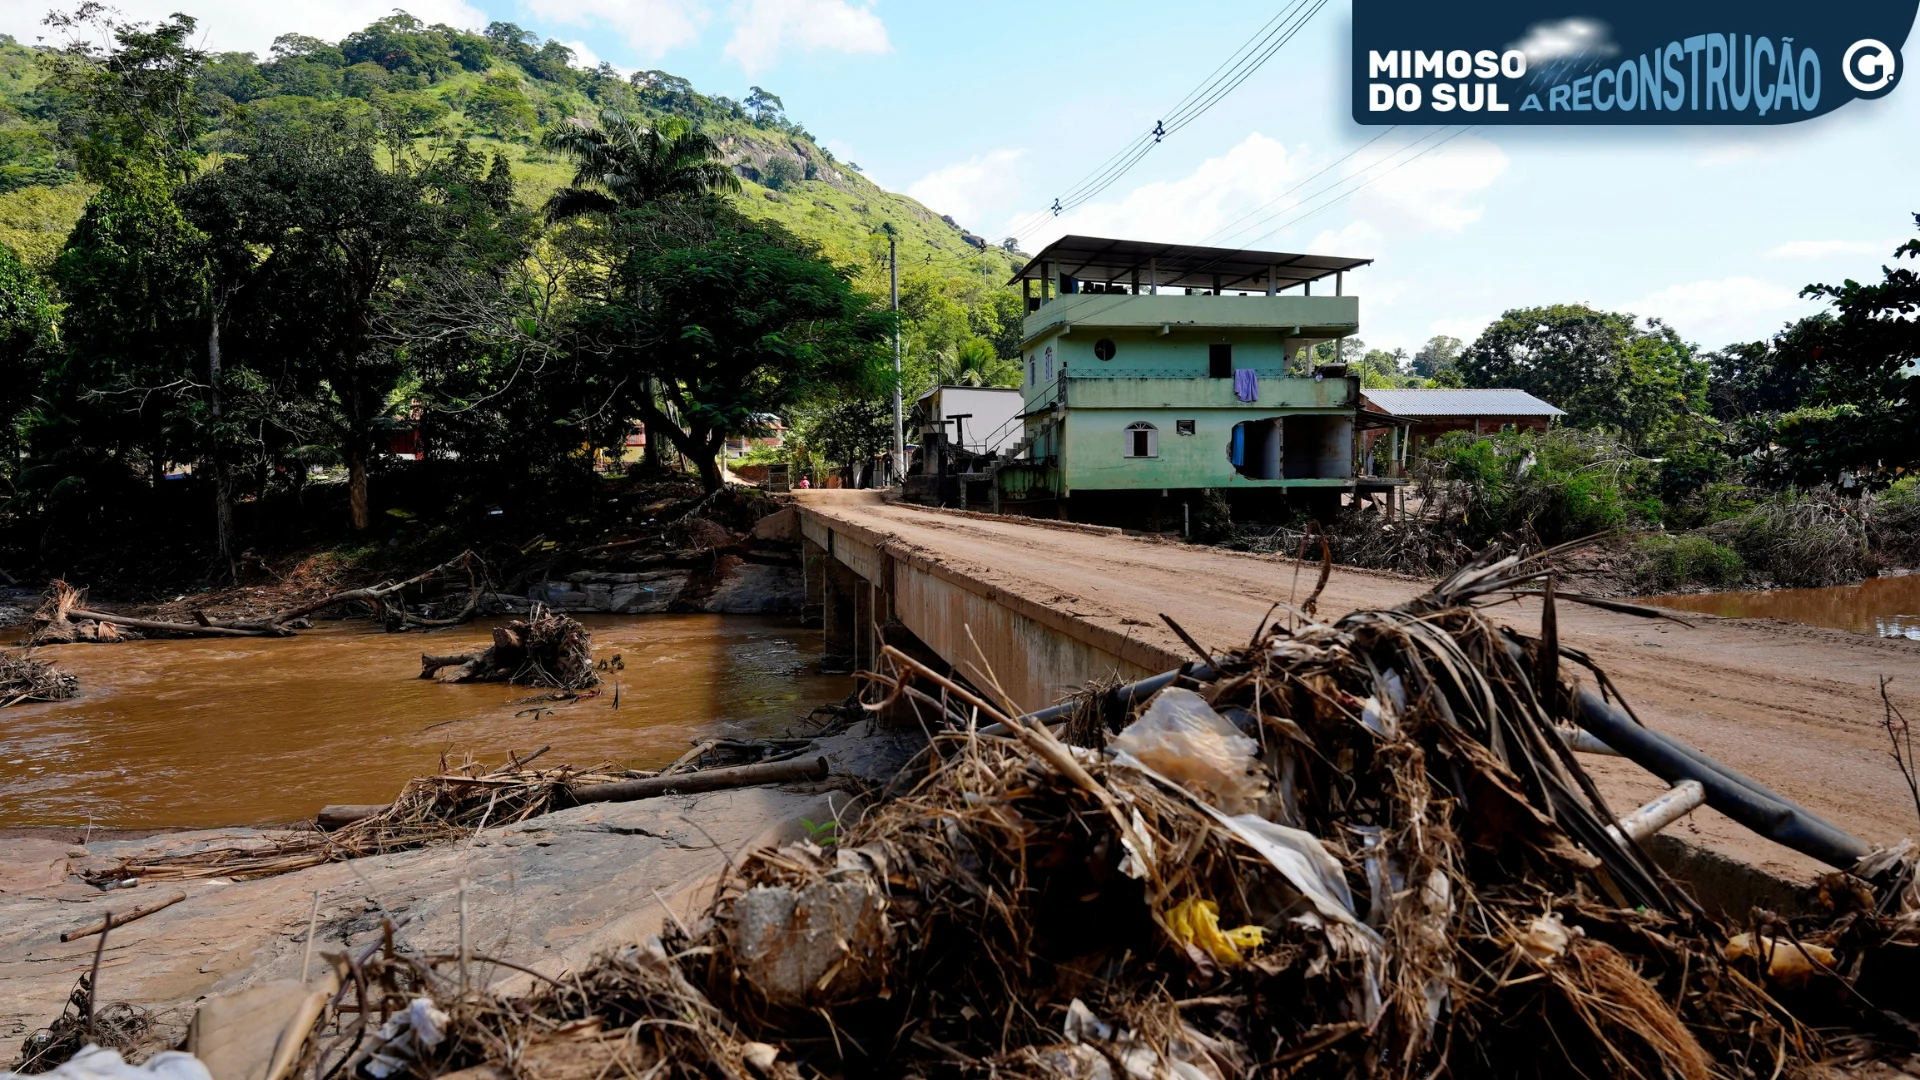 Rastro de destruição deixado por enchente ainda pode ser visto nas ruas de Mimoso do Sul, um mês após tragédia